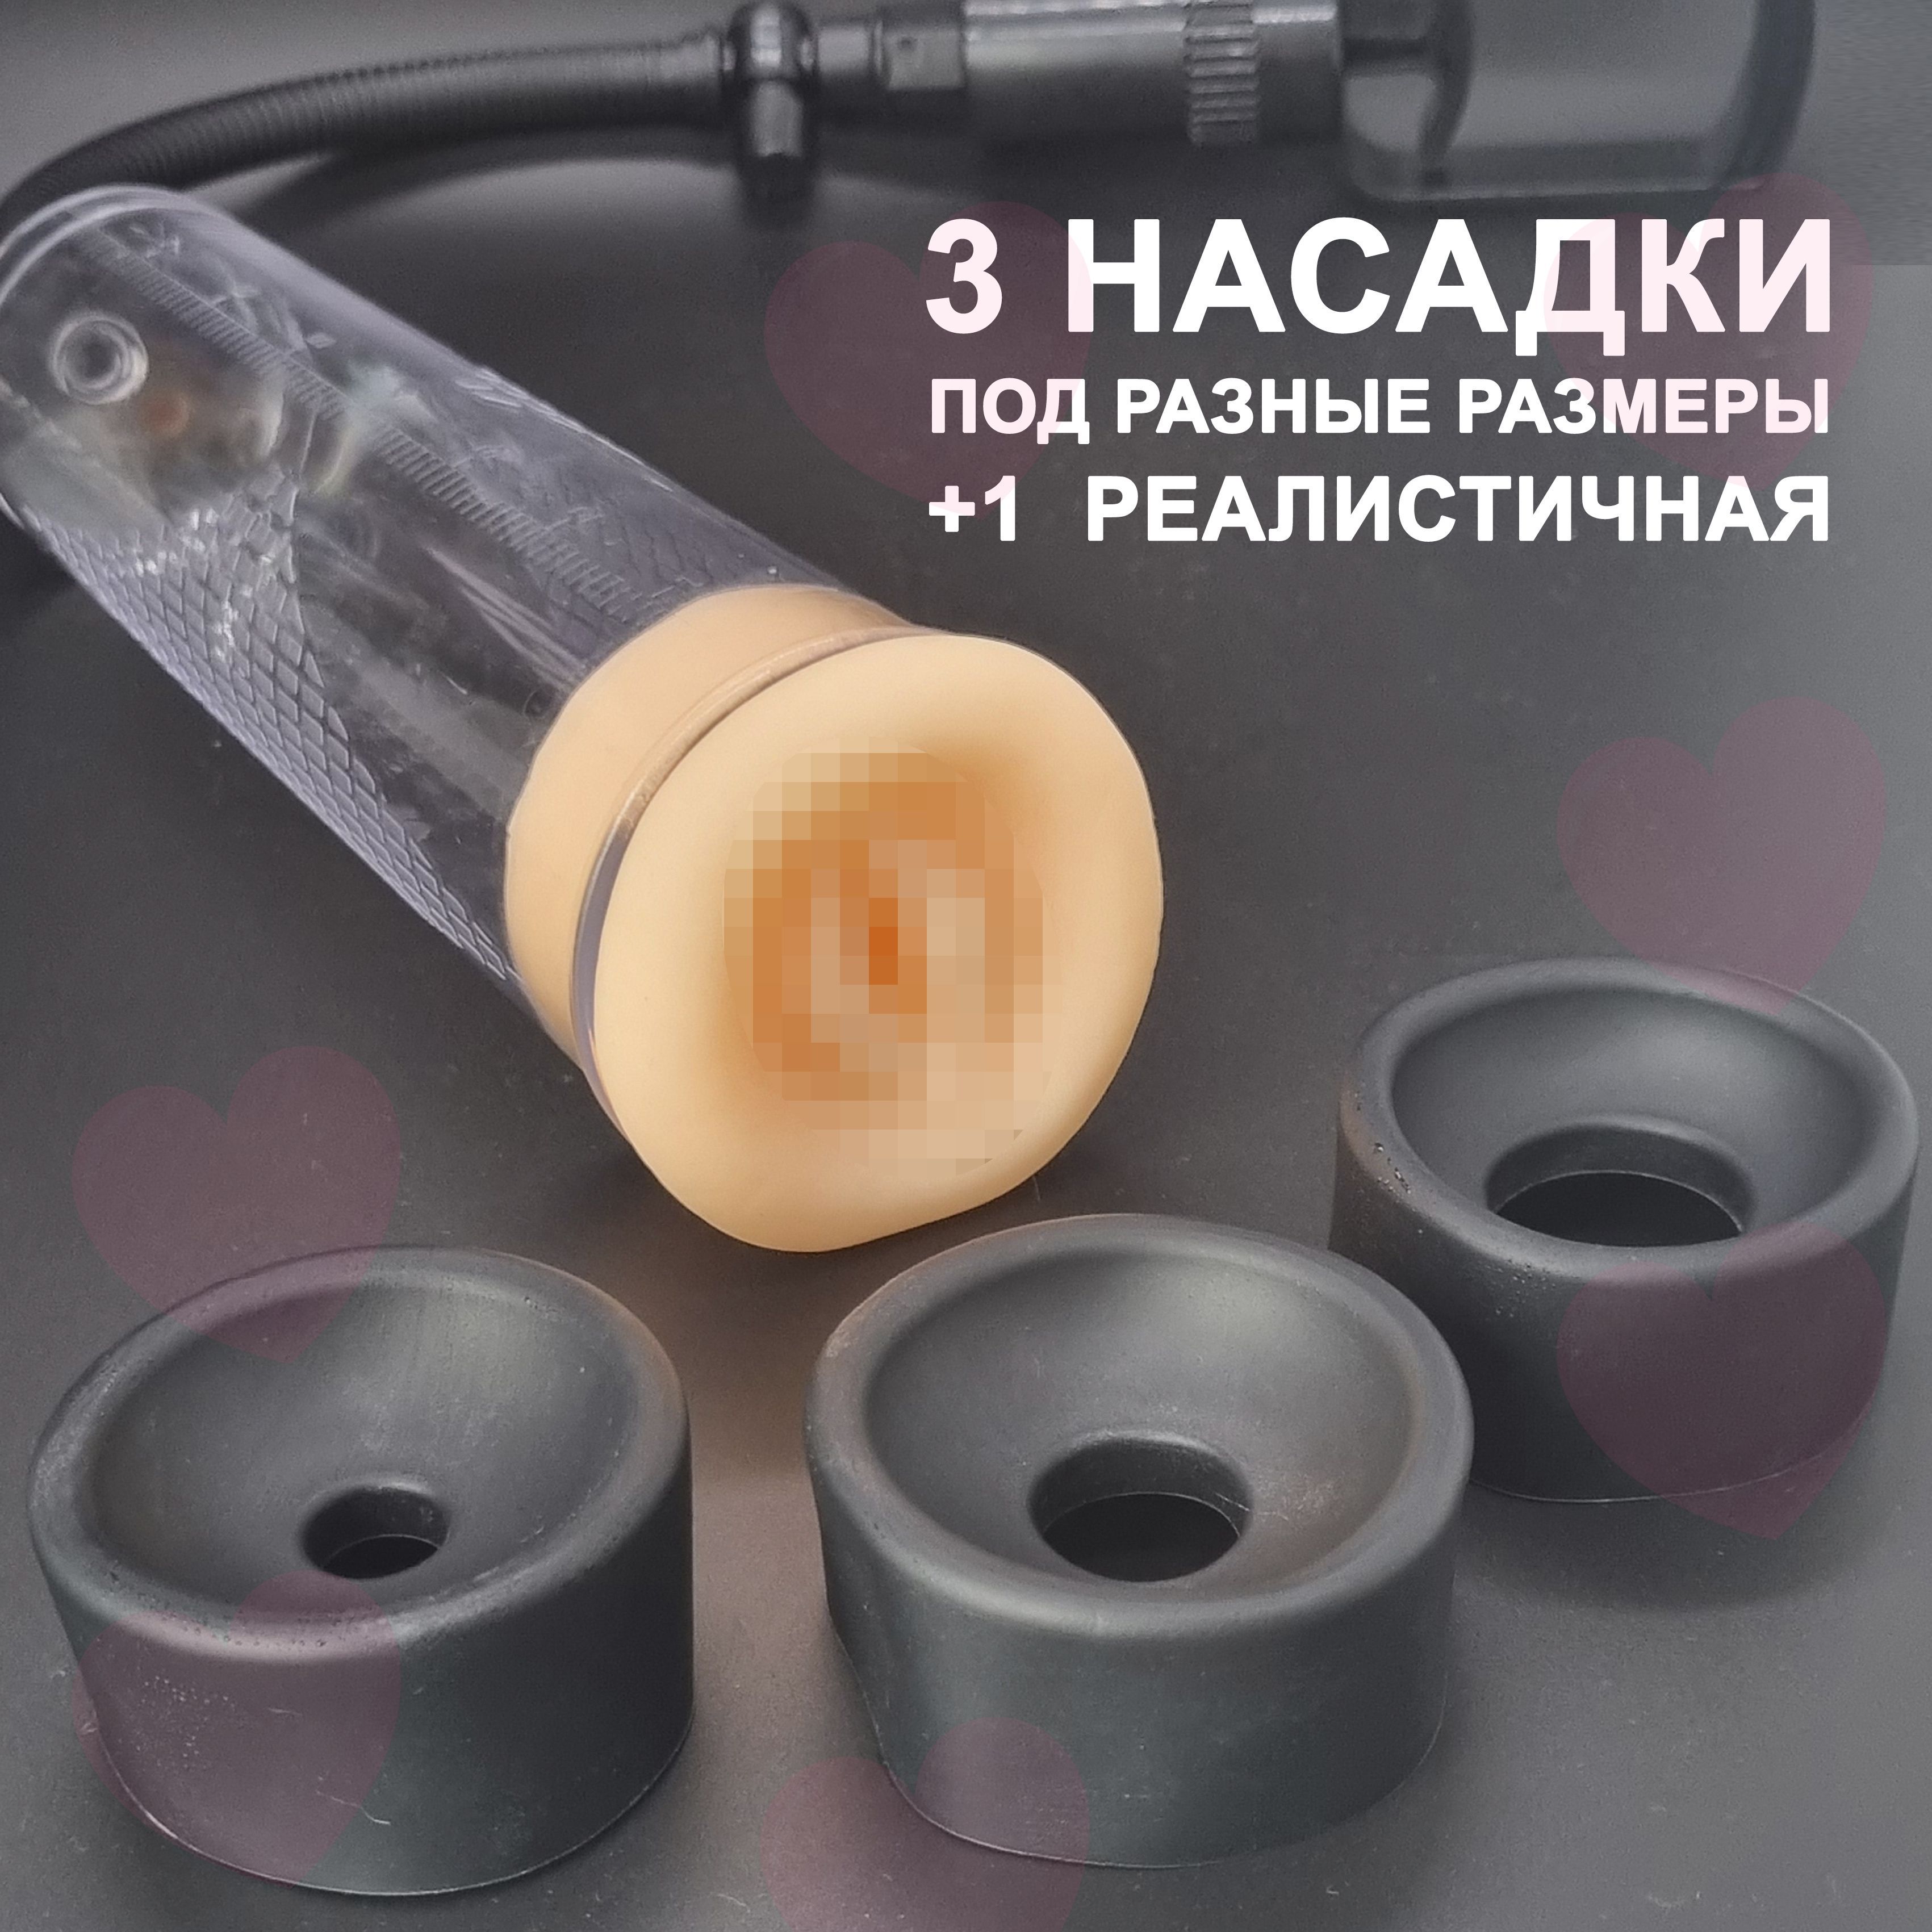 Помпа для половых губ Perfect Touch - купить по цене руб в Москве в секс-шопе intimru